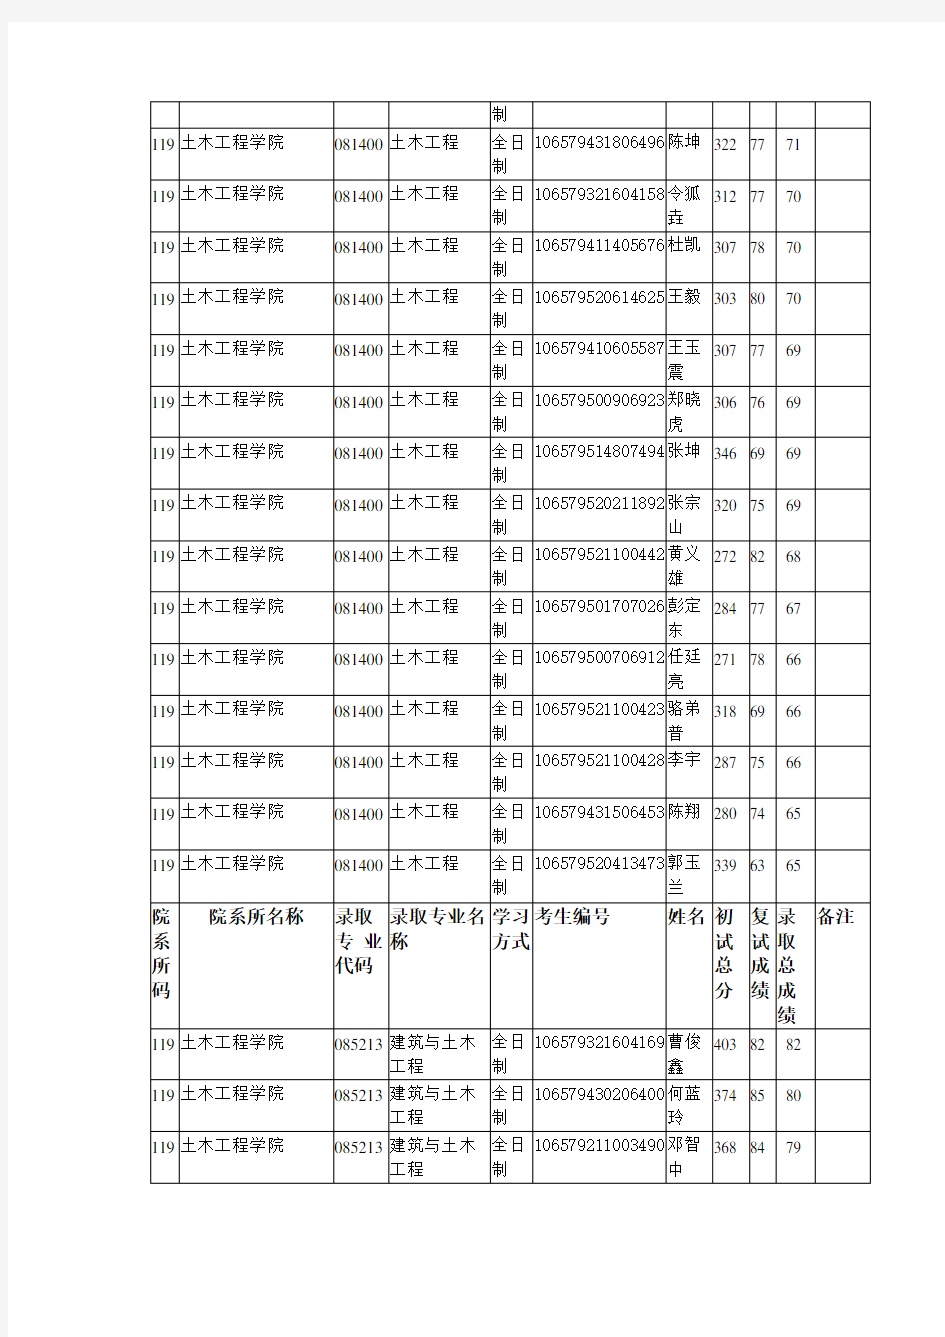 2019贵州大学土木工程学院硕士研究生拟录取名单